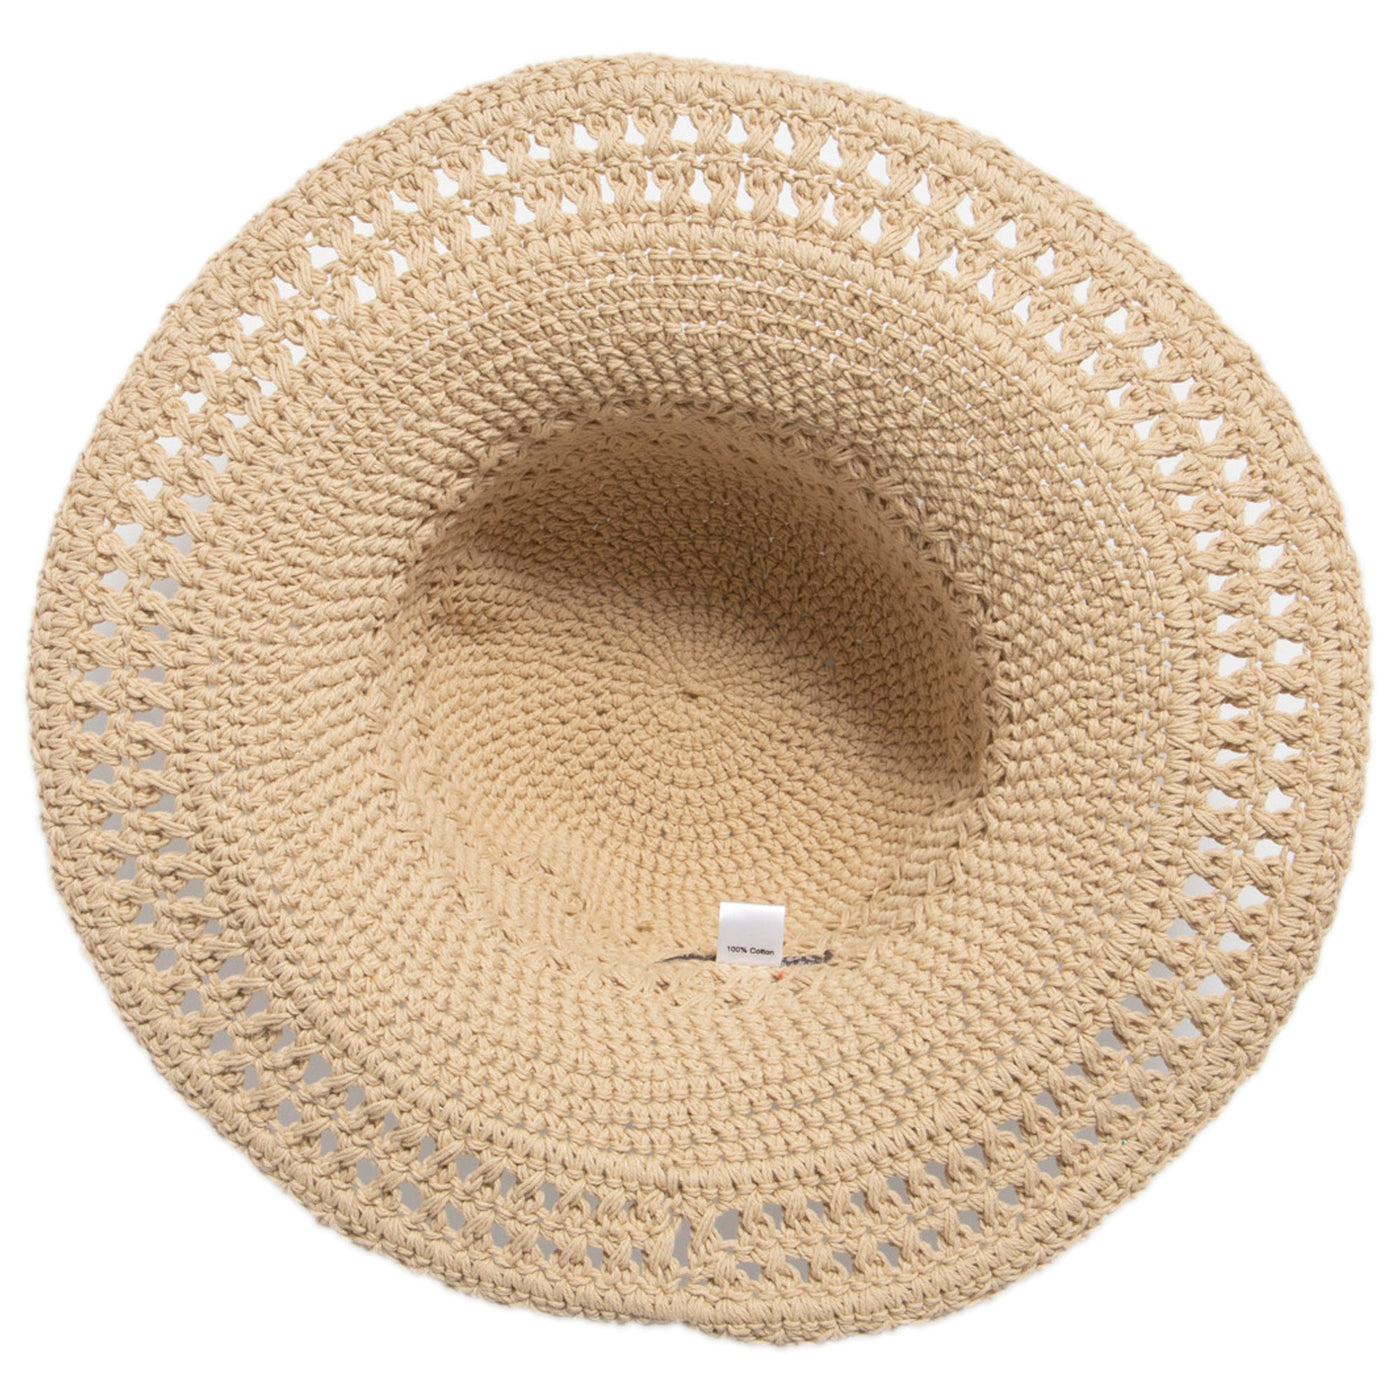 CROCHET - Women's Cotton Crochet Hat With A Large Brim